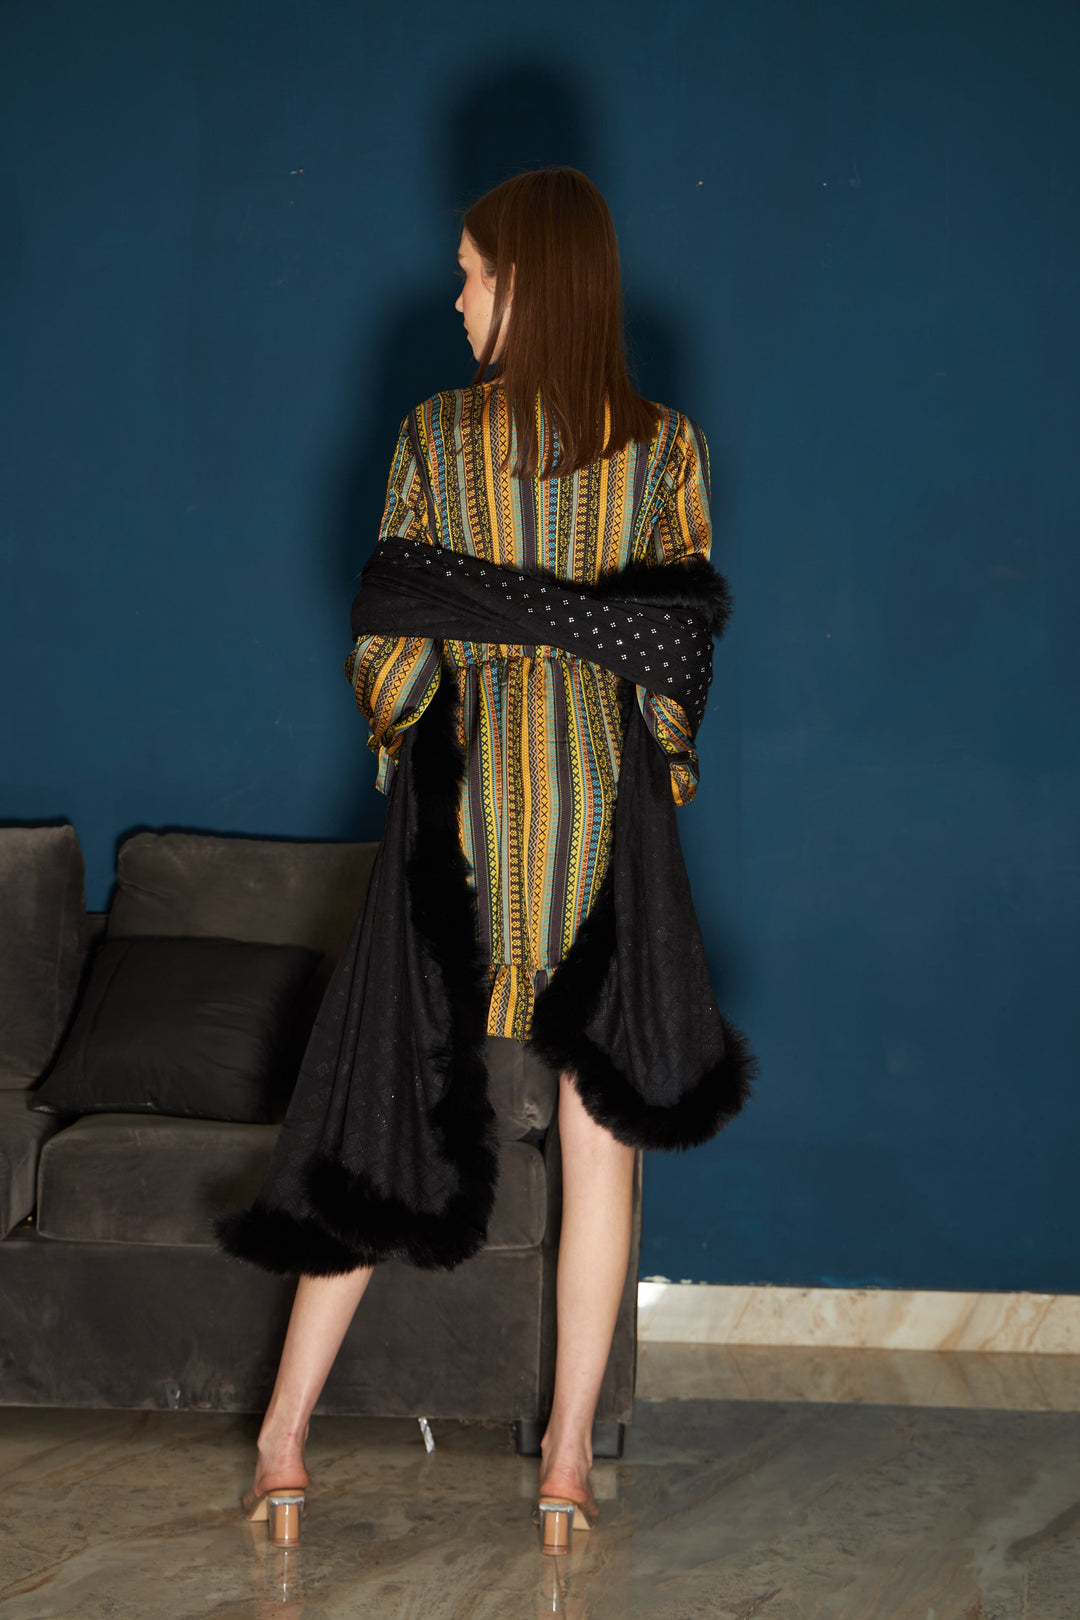 Maria Multicolored Satin Striped Dress - Black